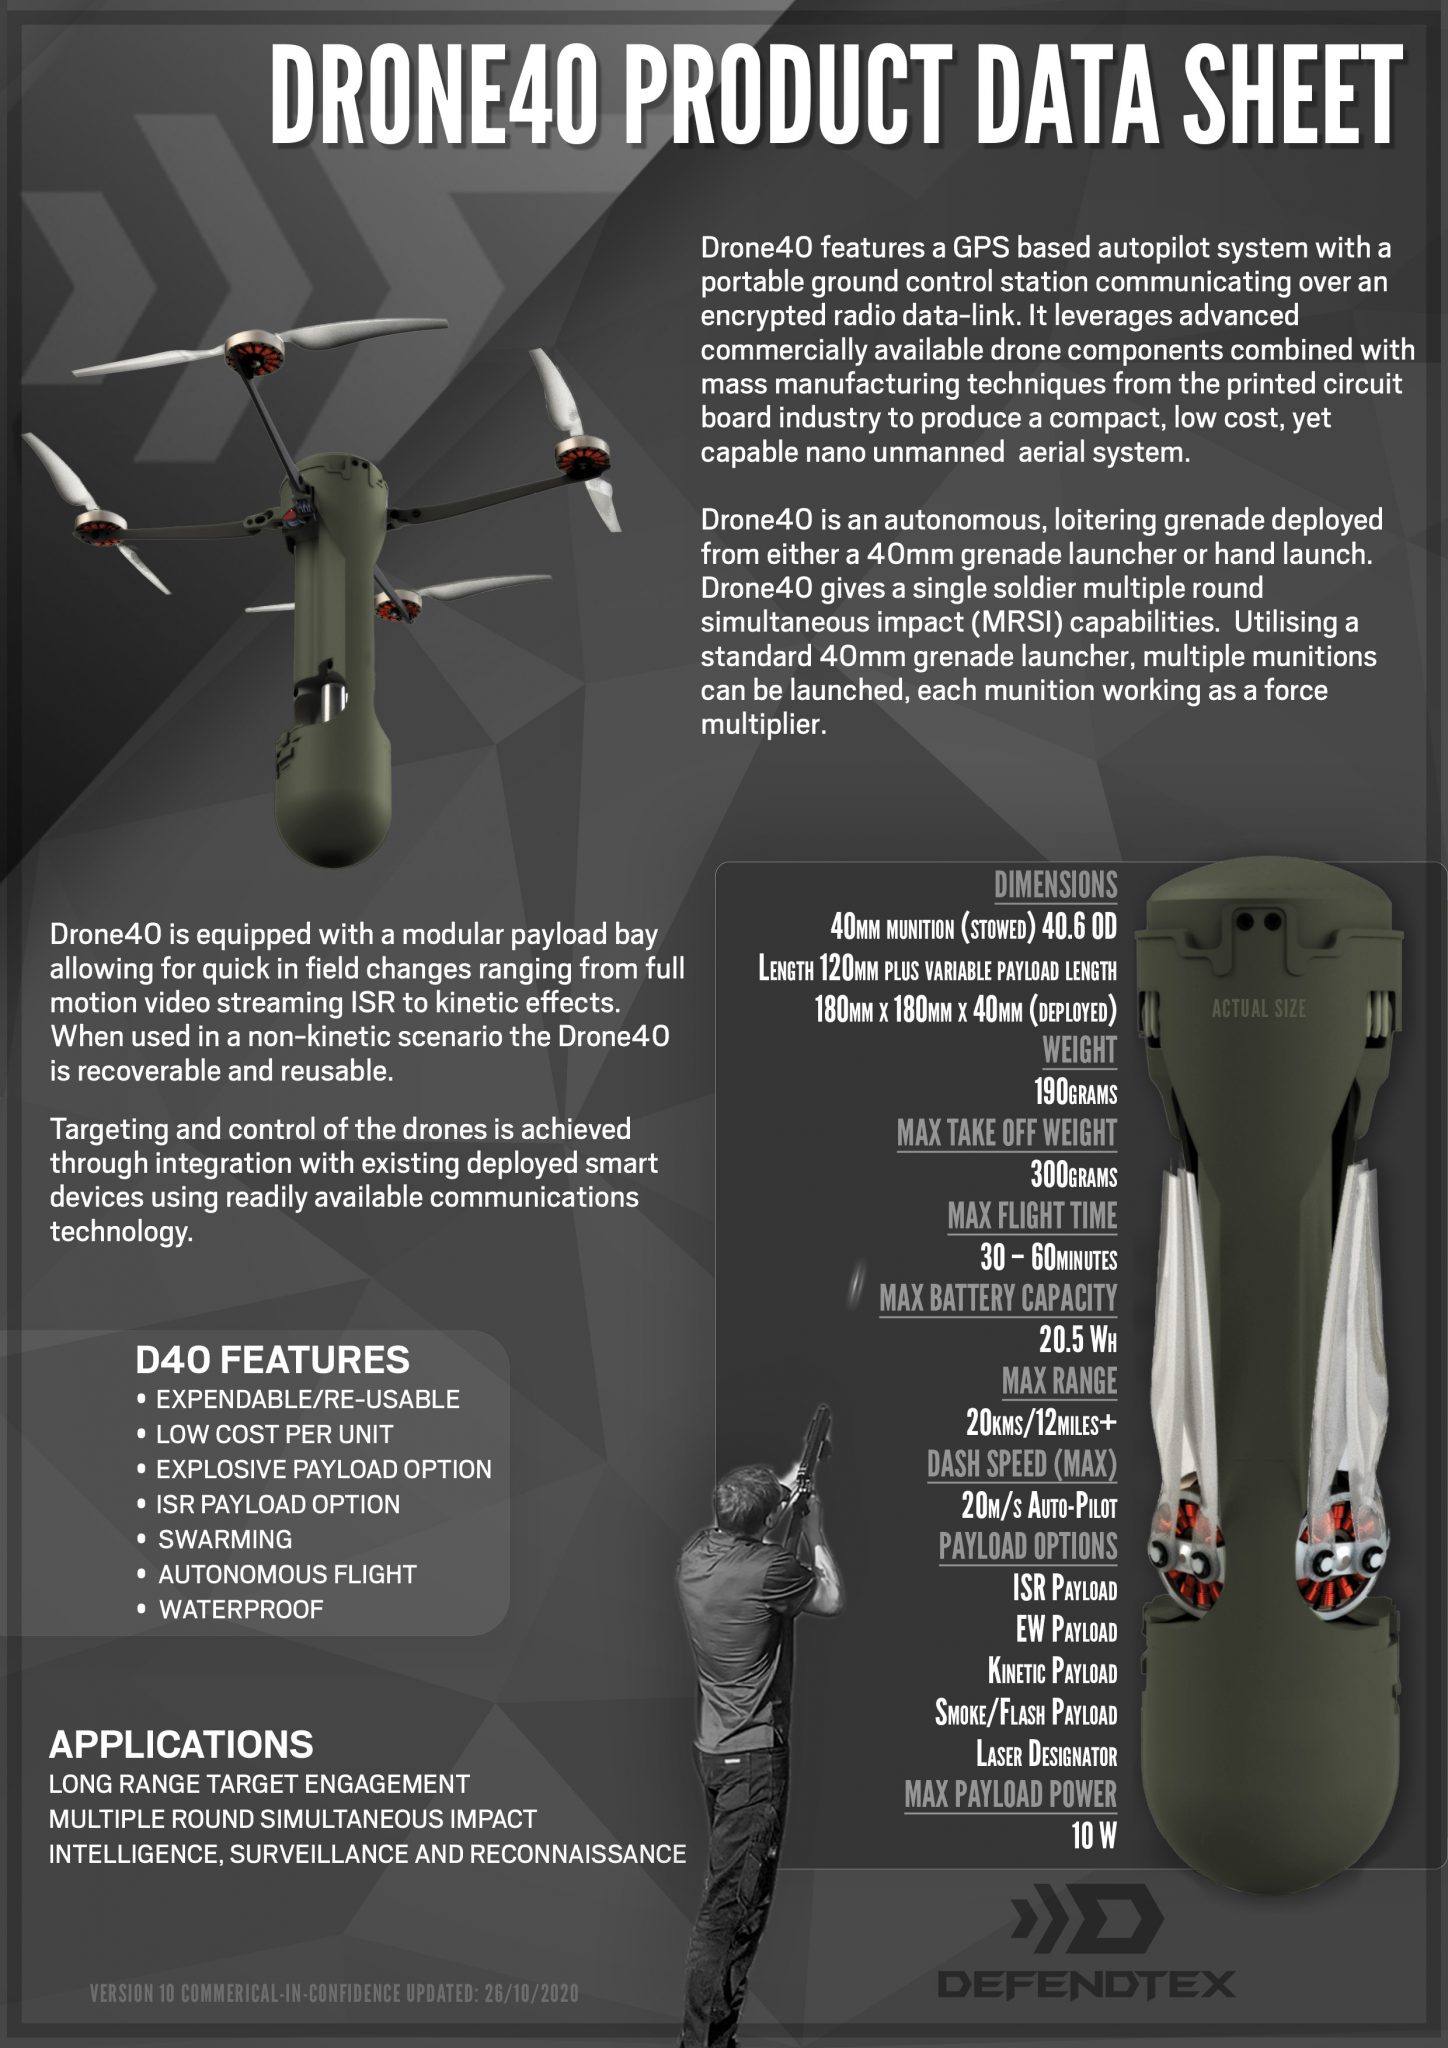 DefendTex Drone40 Grenade Launcher-Fired Mini-Drones